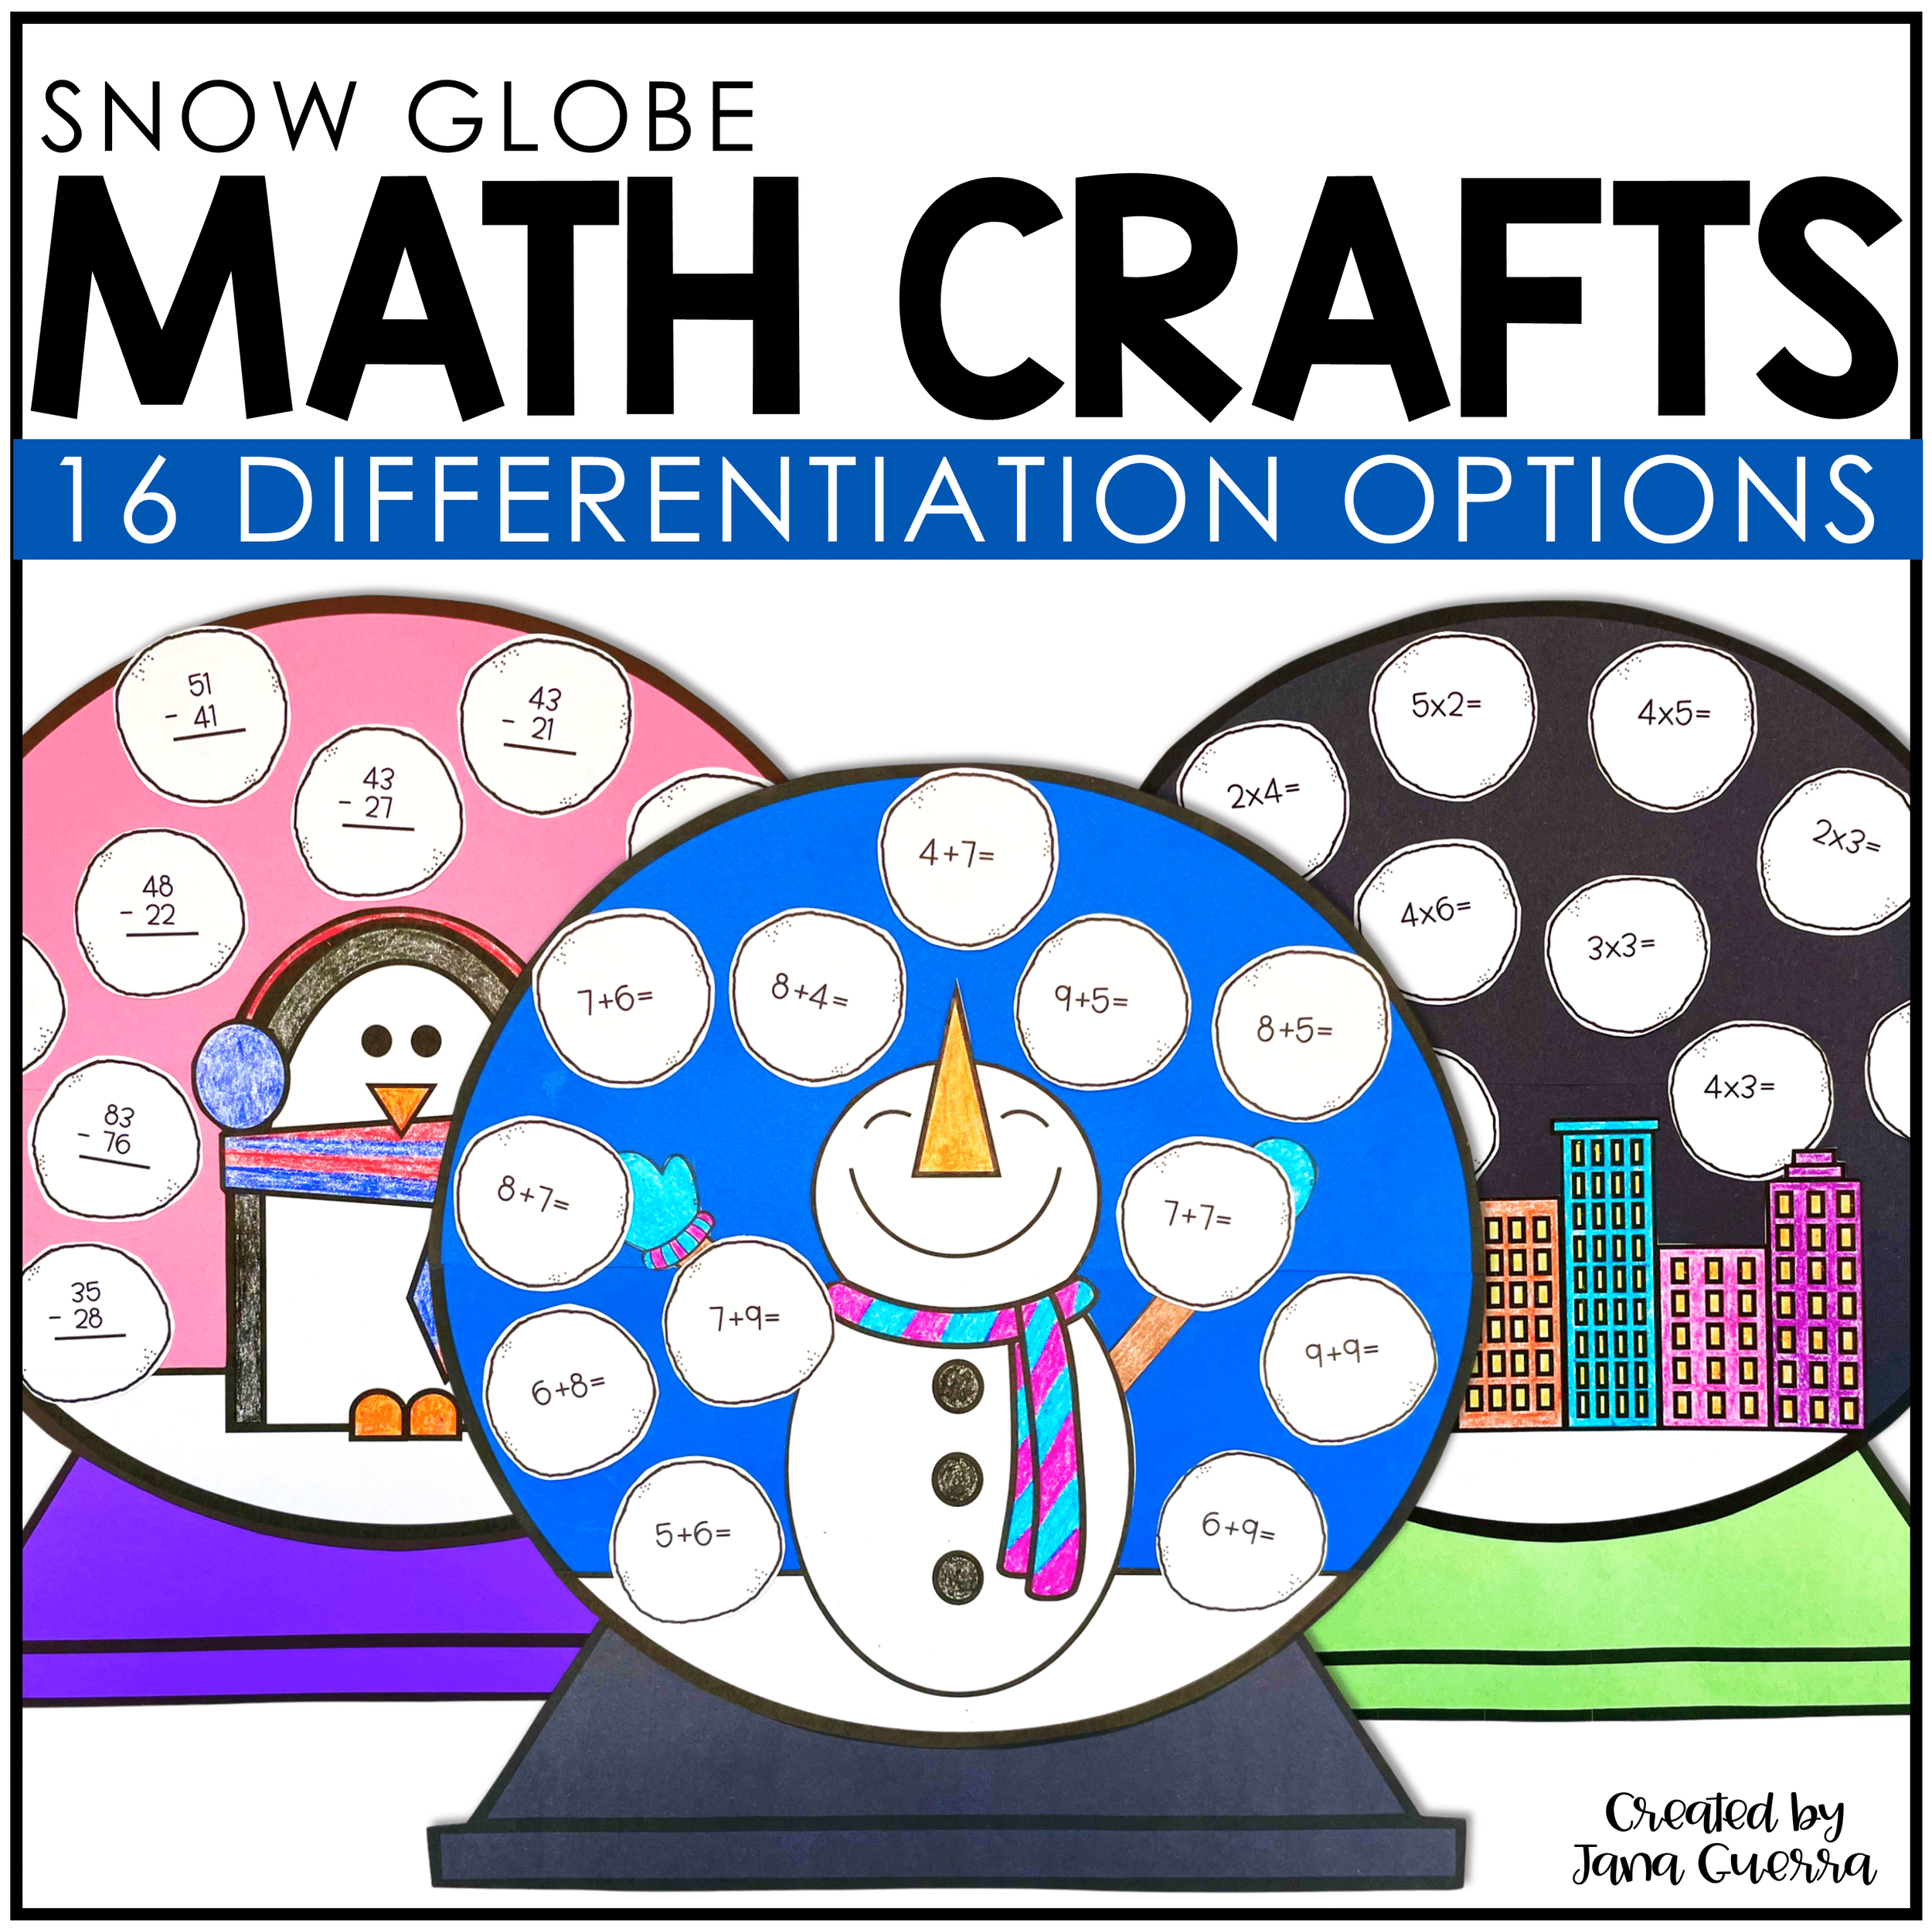 Snow Globe Math Crafts